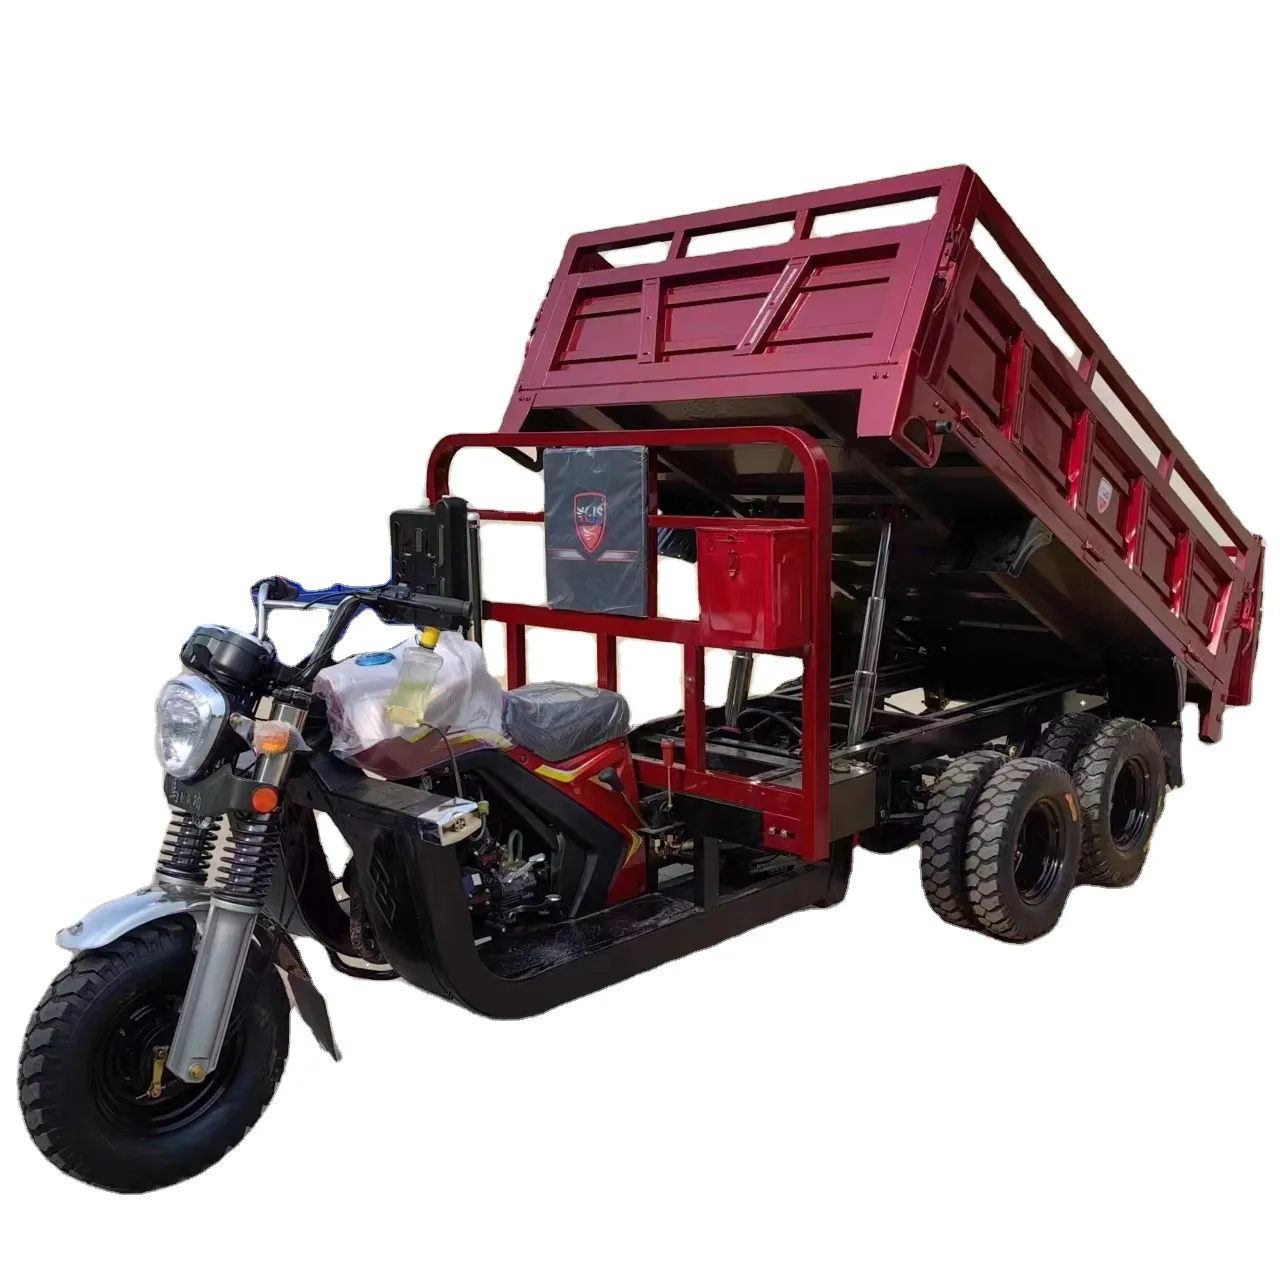 دراجة نقل بضائع ثلاثية العجلات مزودة بمحرك بضائع مُبرَّد بالماء 250 سي سي/300 سي سي/350 سي سي ممتازة مع 9 عجلات للنقل بطاقة عالية